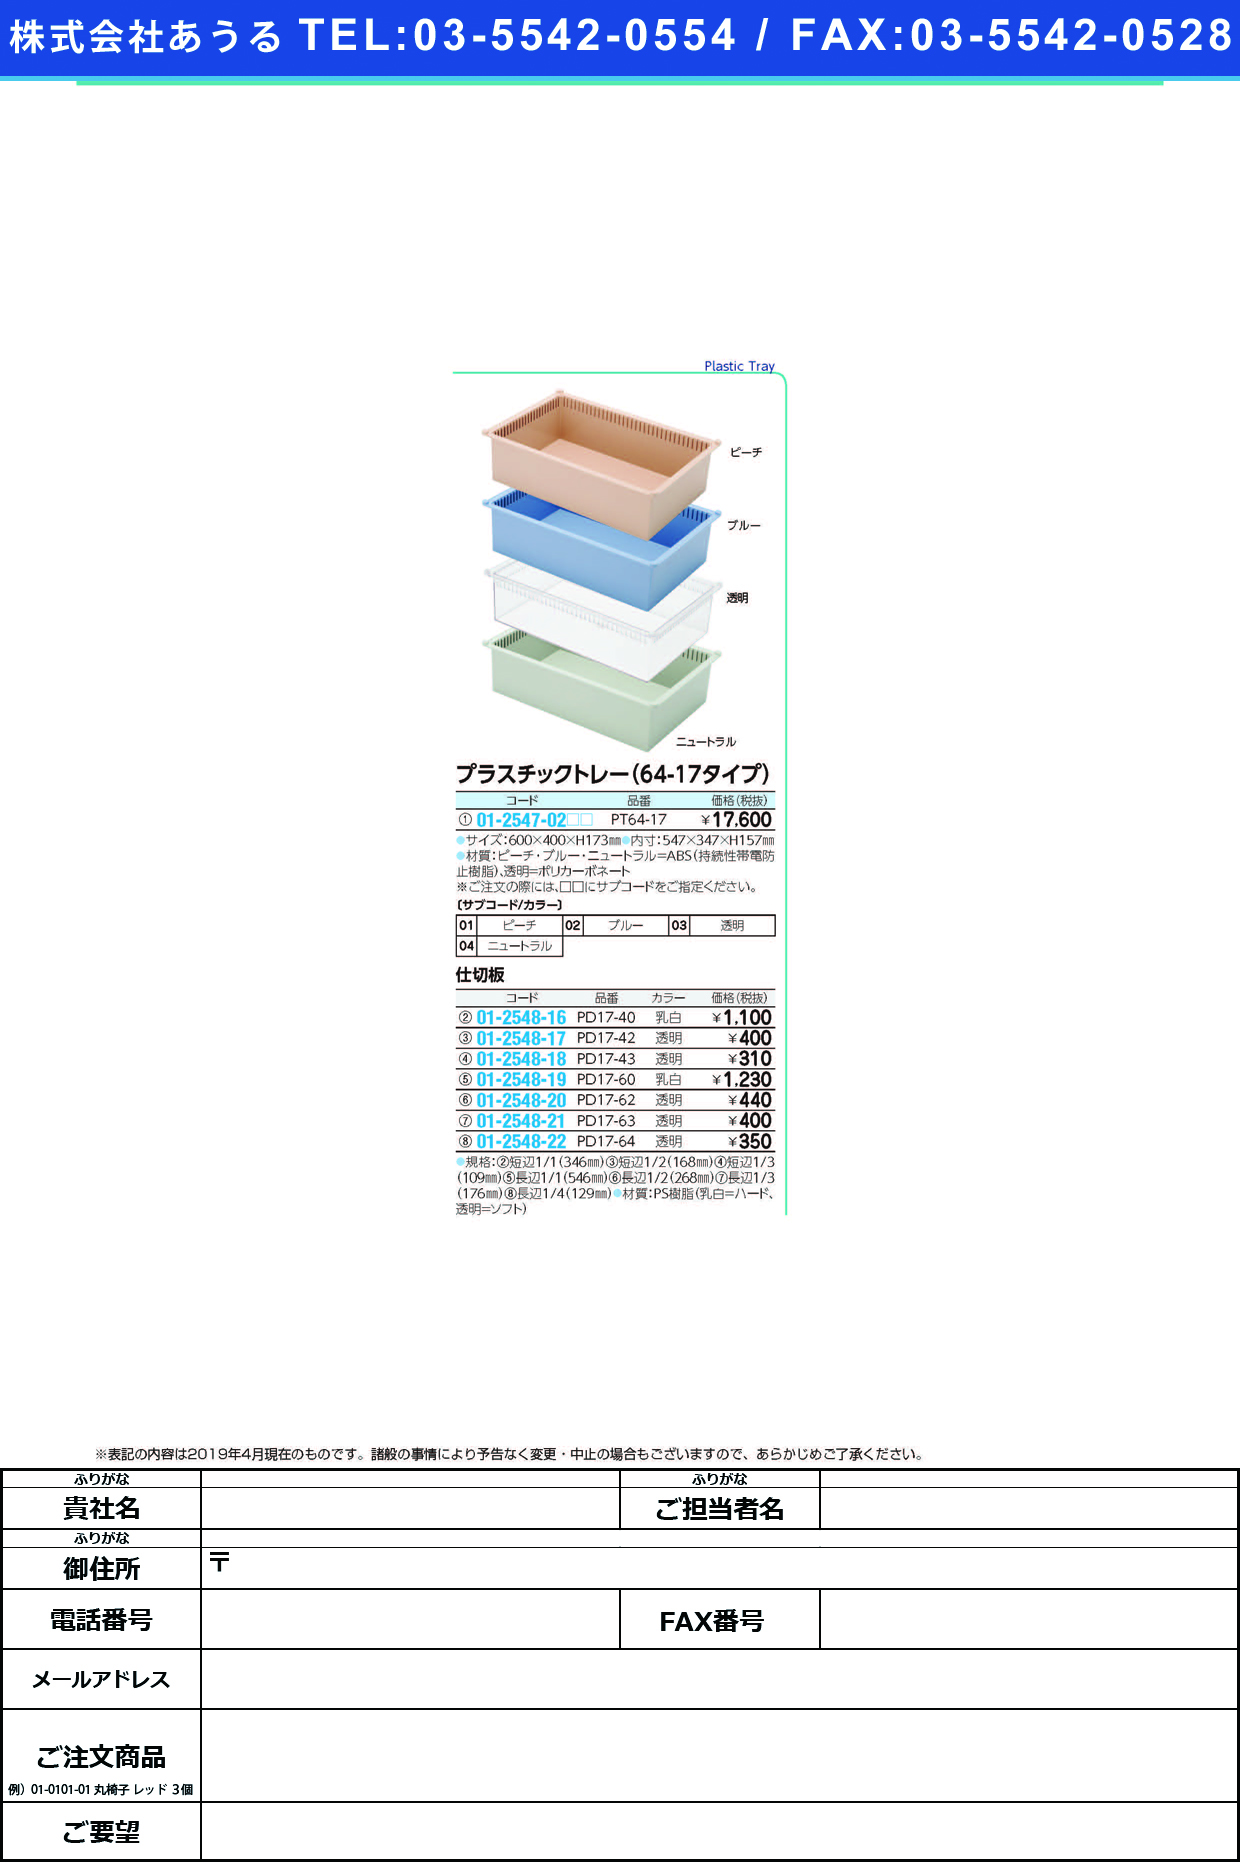 (01-2548-22)プラスチックトレー用仕切板 PD17-64(ﾄｳﾒｲ) ﾌﾟﾗｽﾁｯｸﾄﾚｰﾖｳｼｷﾘﾊﾞﾝ(サカセ化学工業)【1枚単位】【2019年カタログ商品】